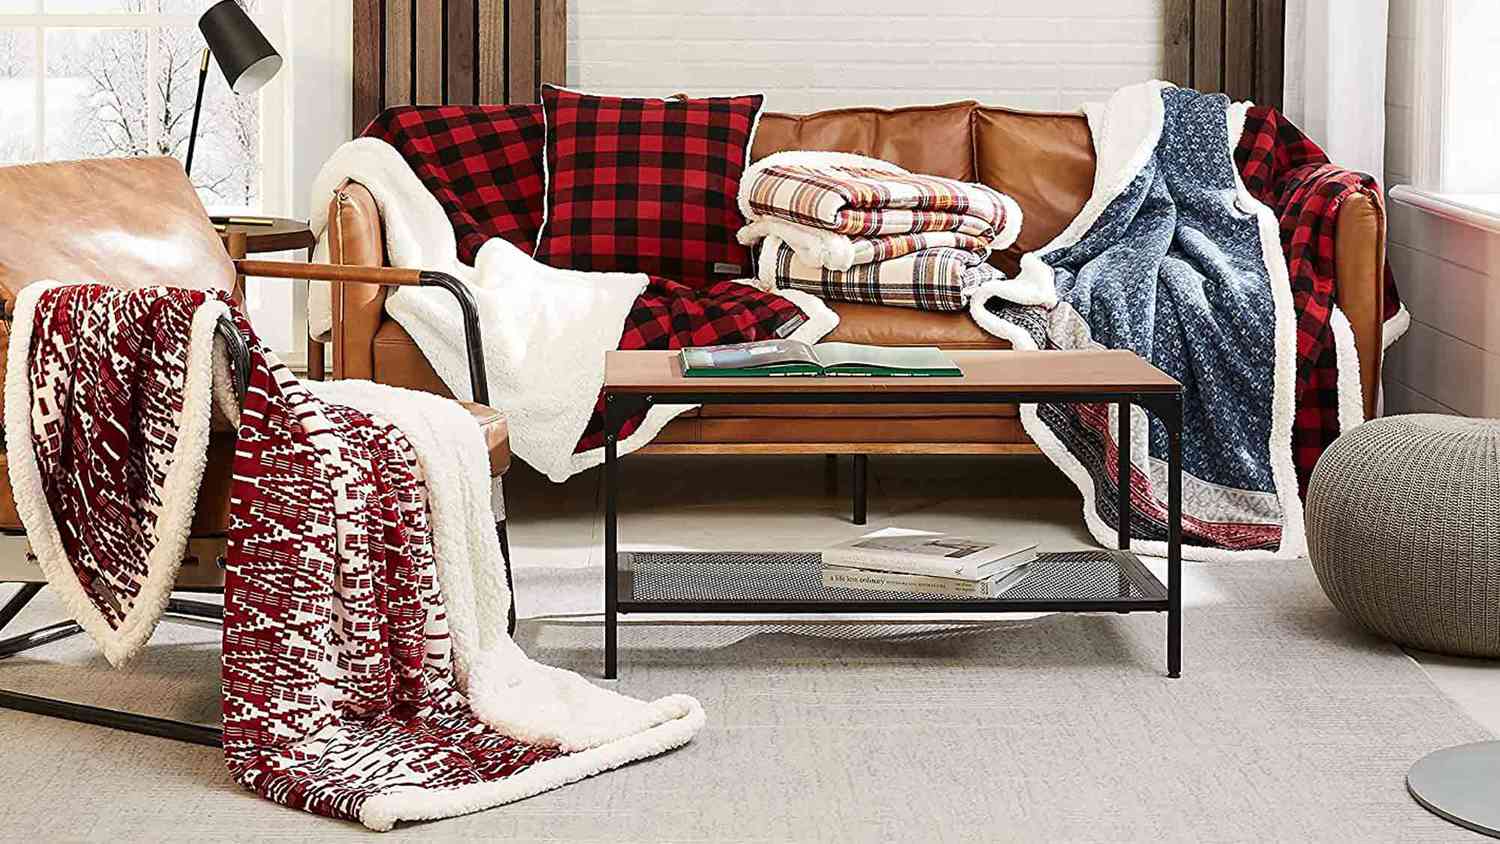 VARIOUS PENGUIN FLEECE BLANKET House Decor New House Gift Sofa Fleece Blanket 